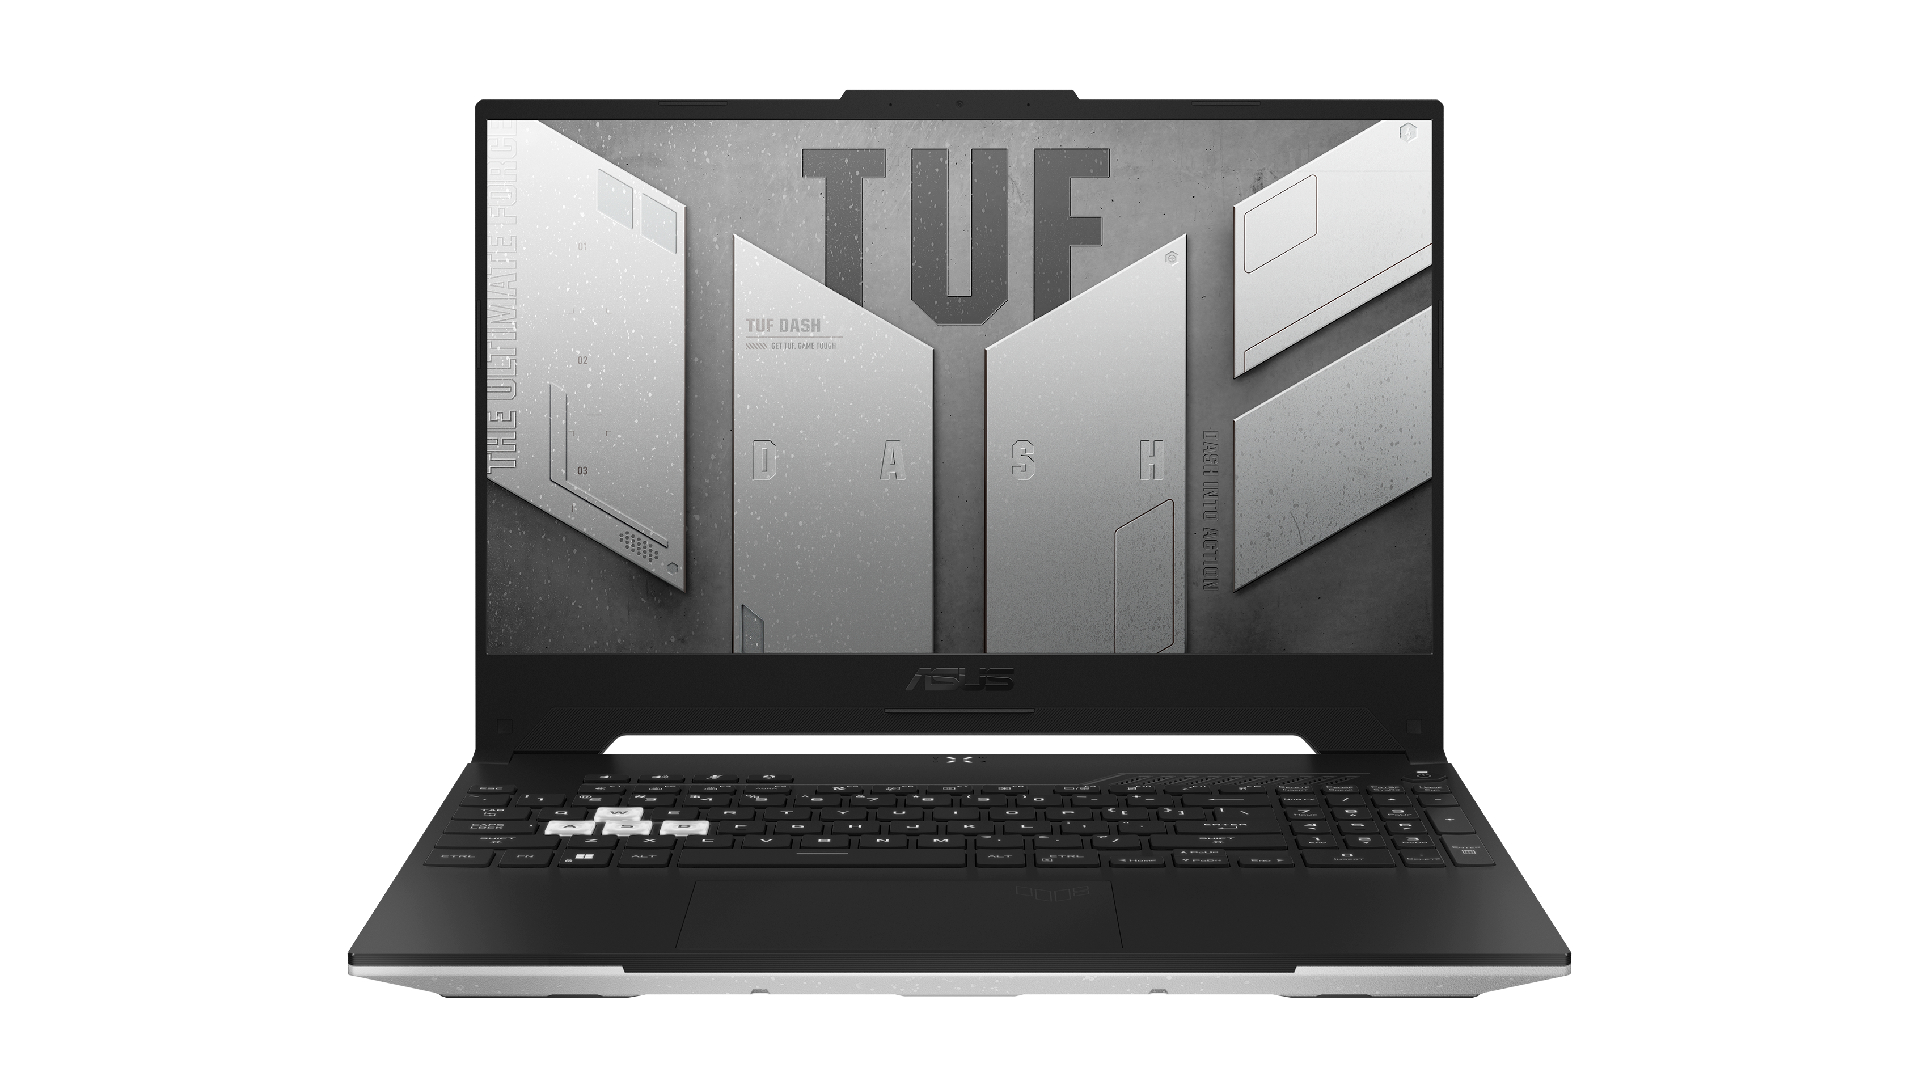 ASUS TUF Dash 15 gaming laptop, white background